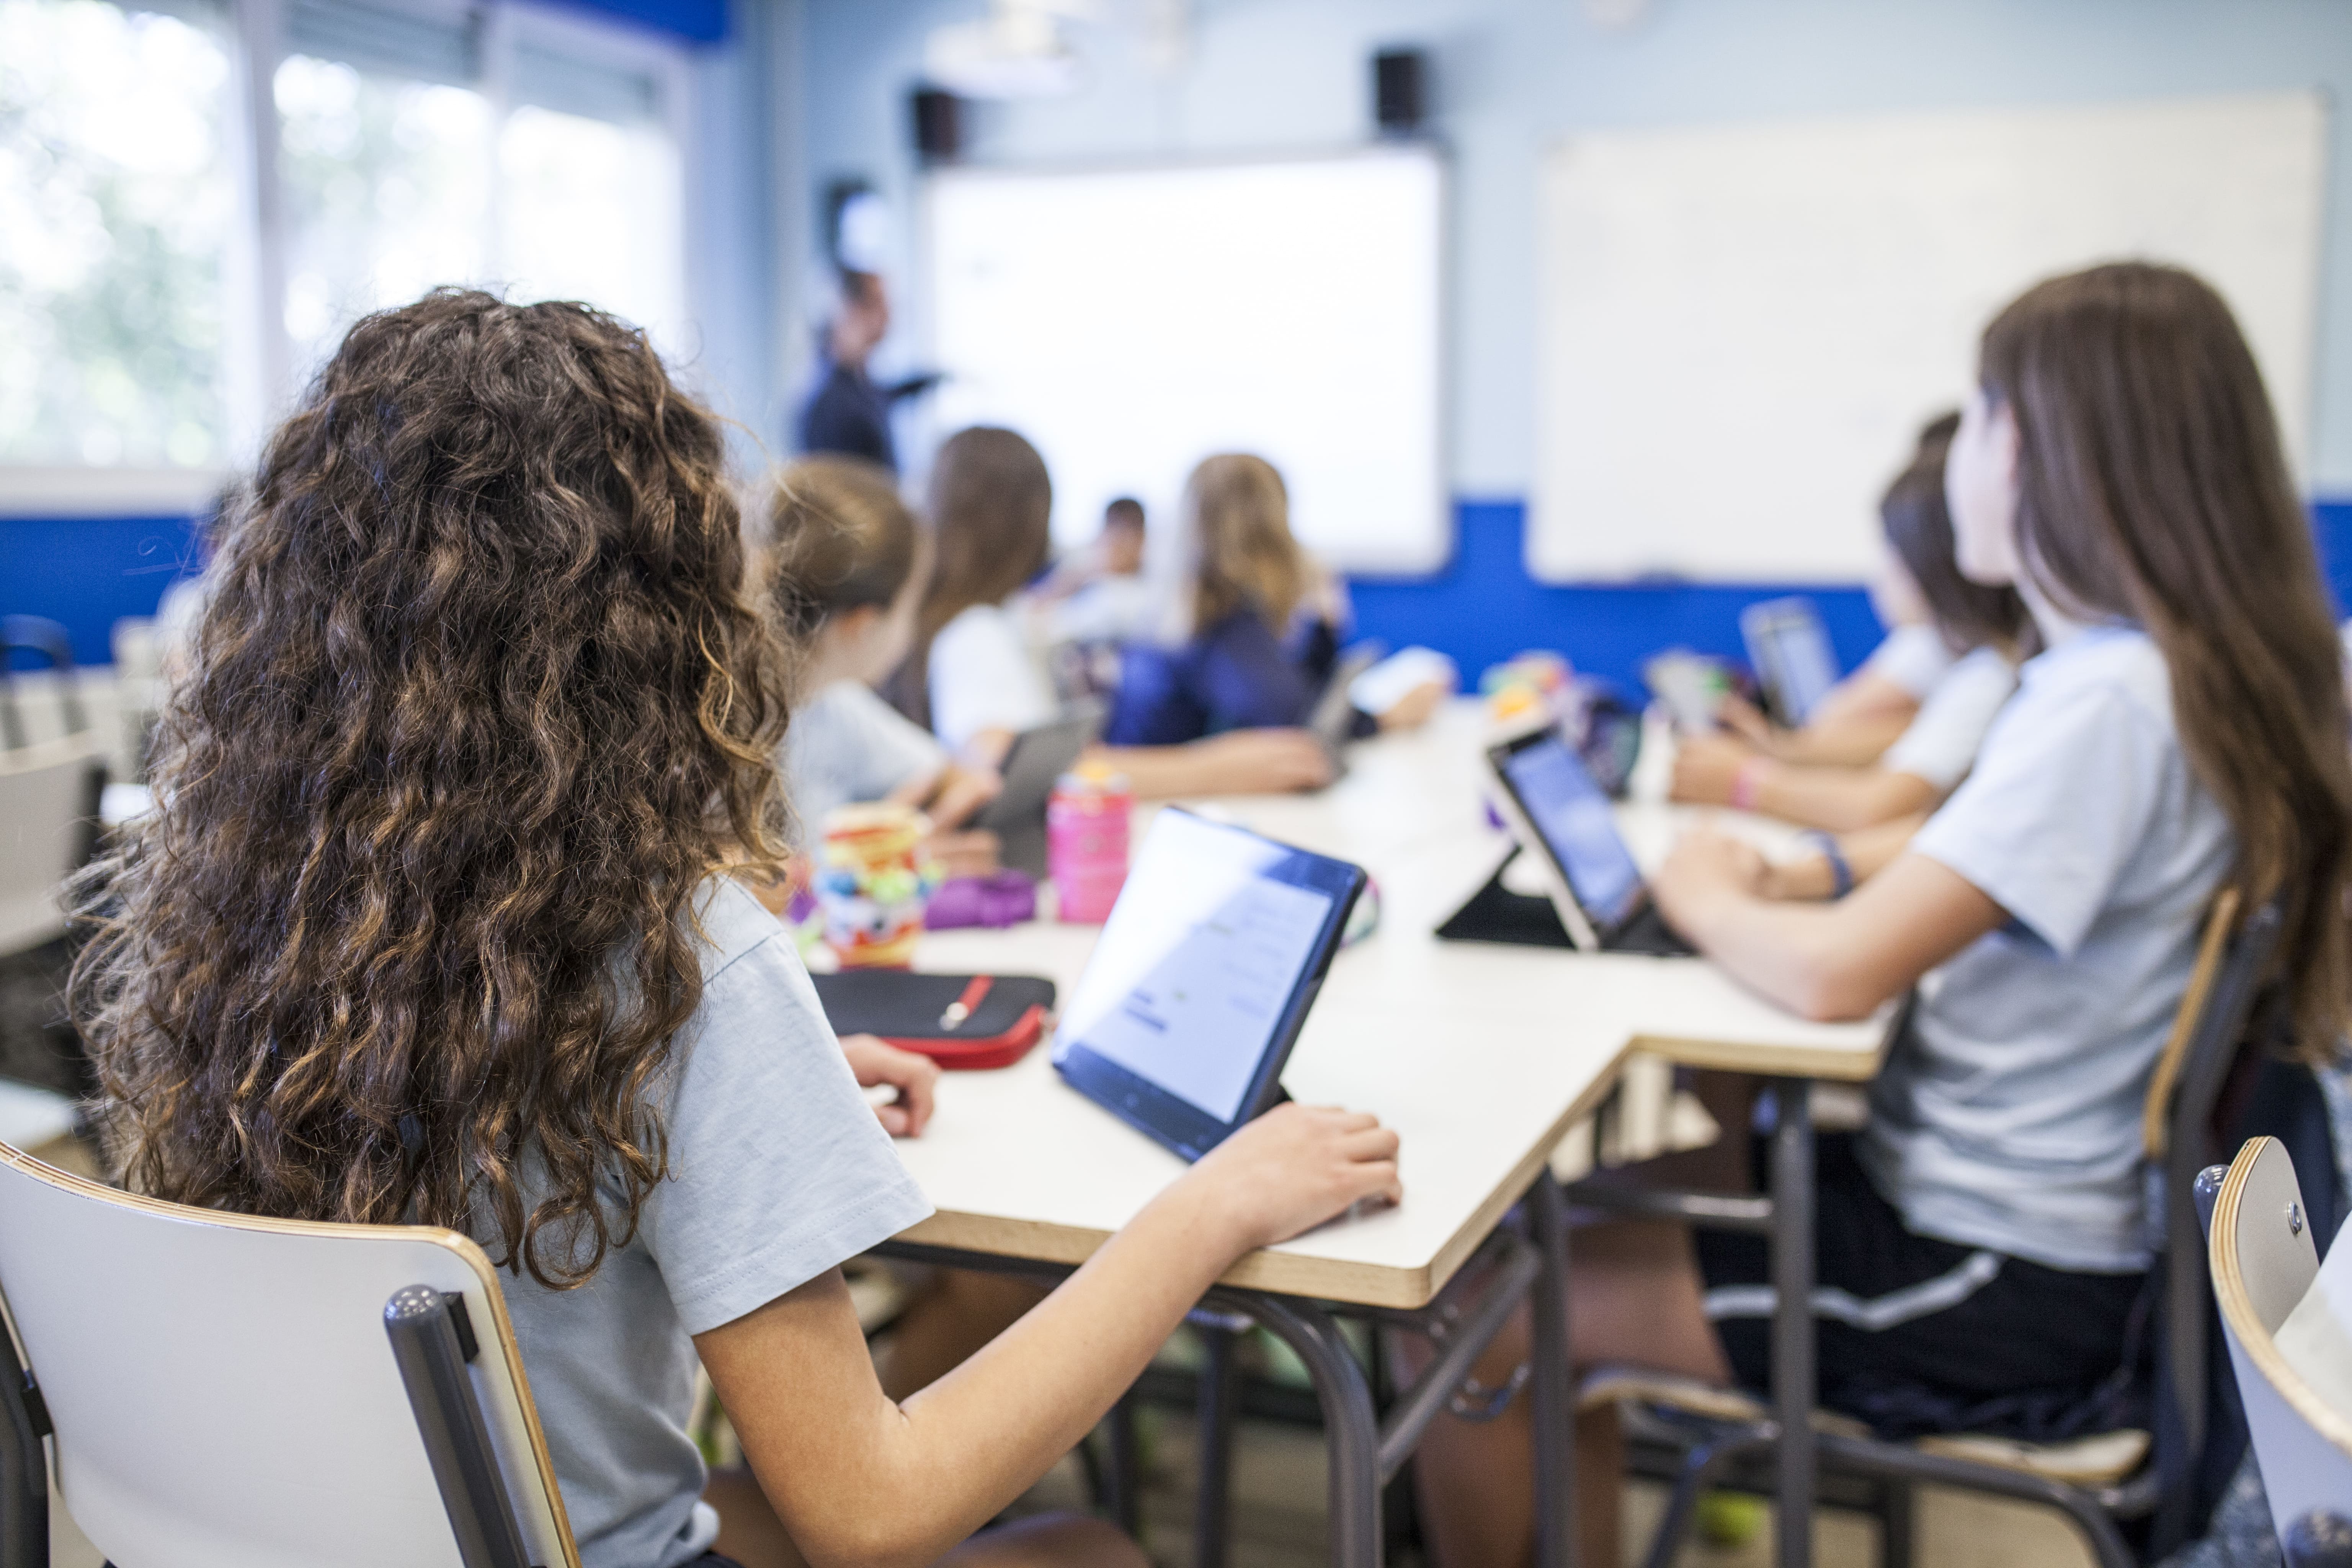 Tecnologias em sala de aula são sinônimo de melhoria?